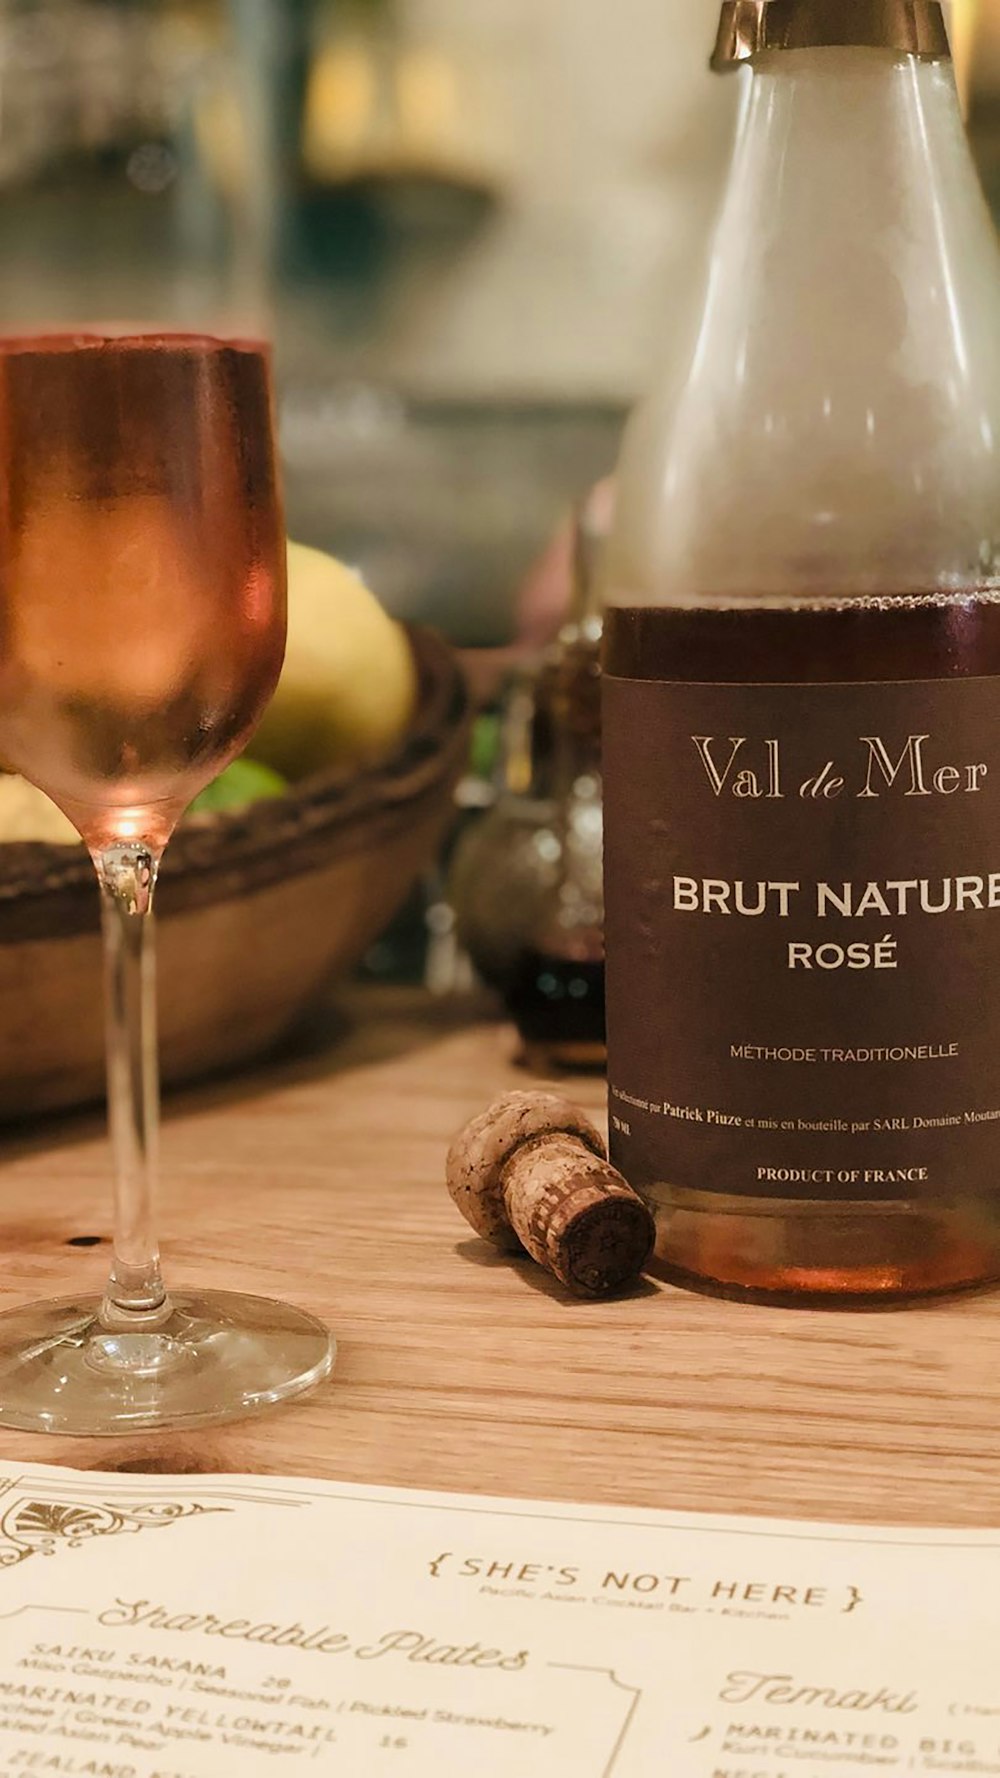 Brut Nature Rose bottle